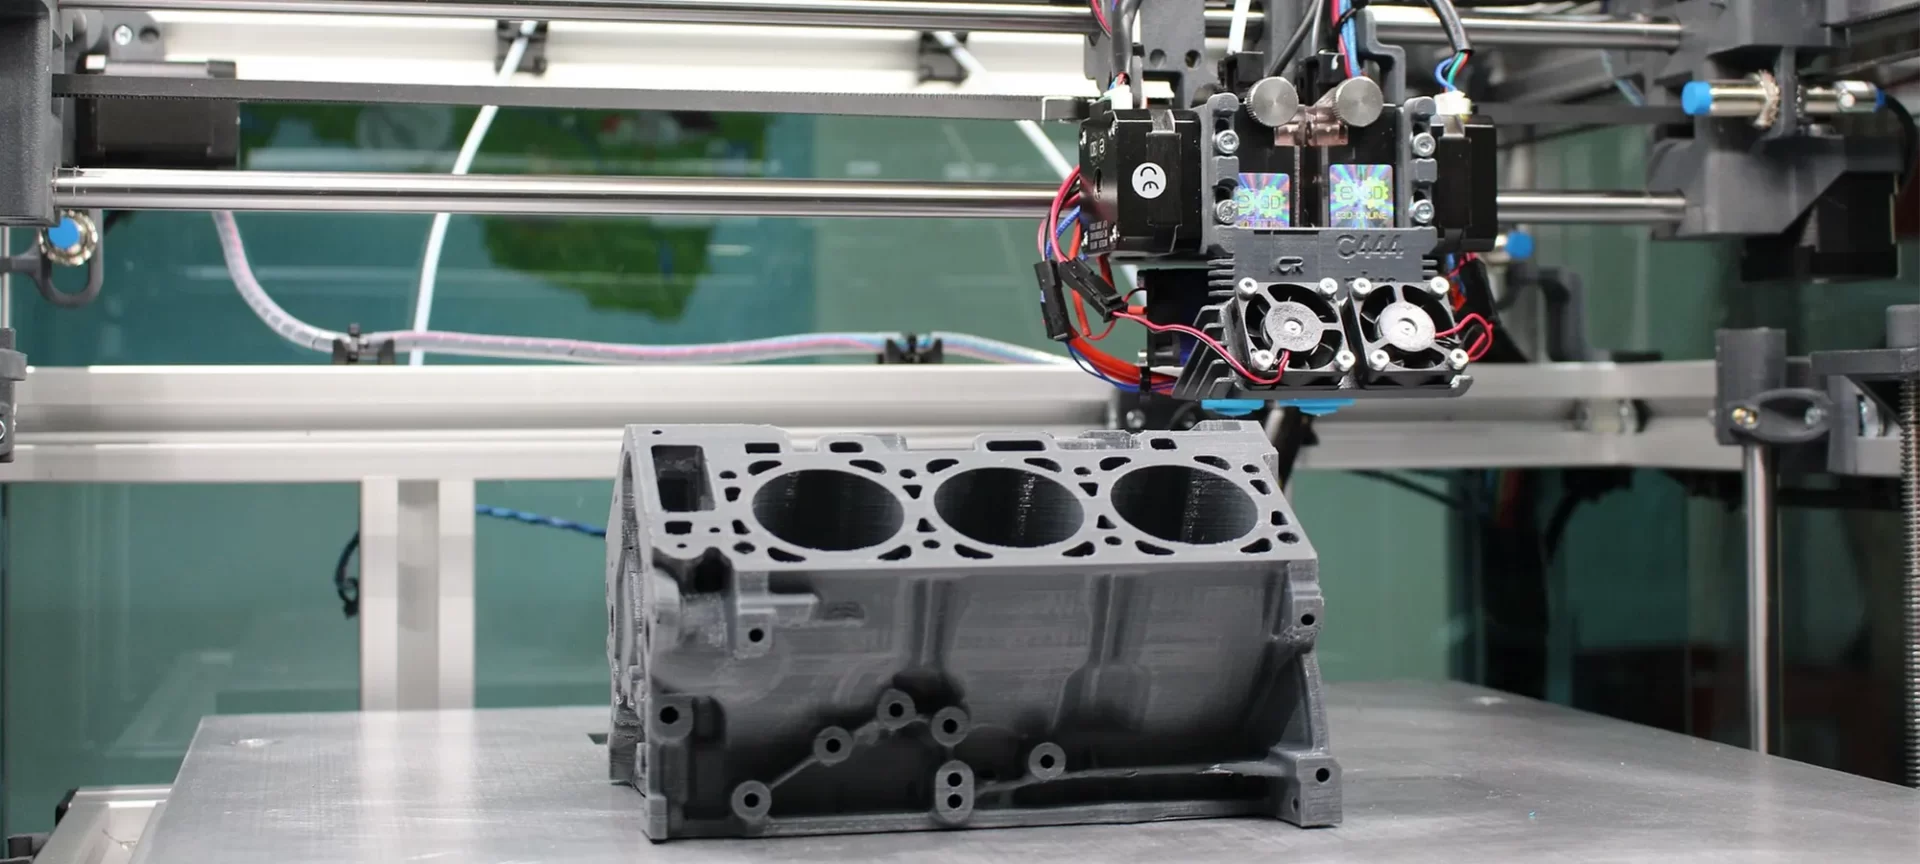 3D printing prototype